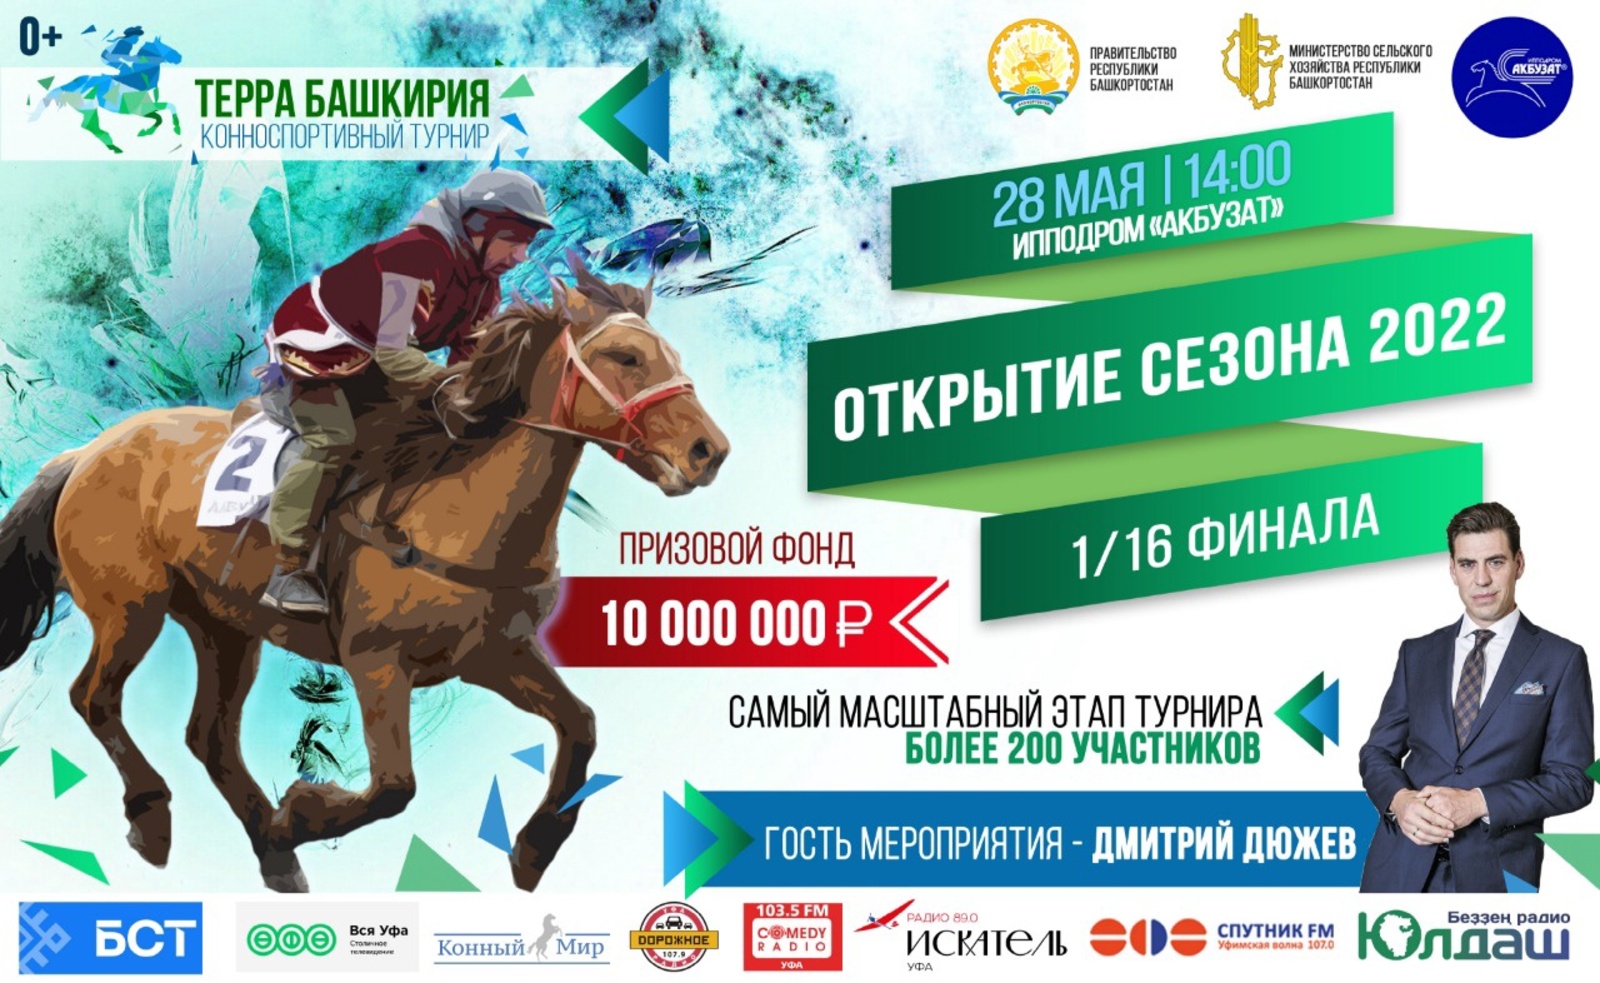 Призовой фонд турнира «Терра Башкирия» составляет 10 млн рублей